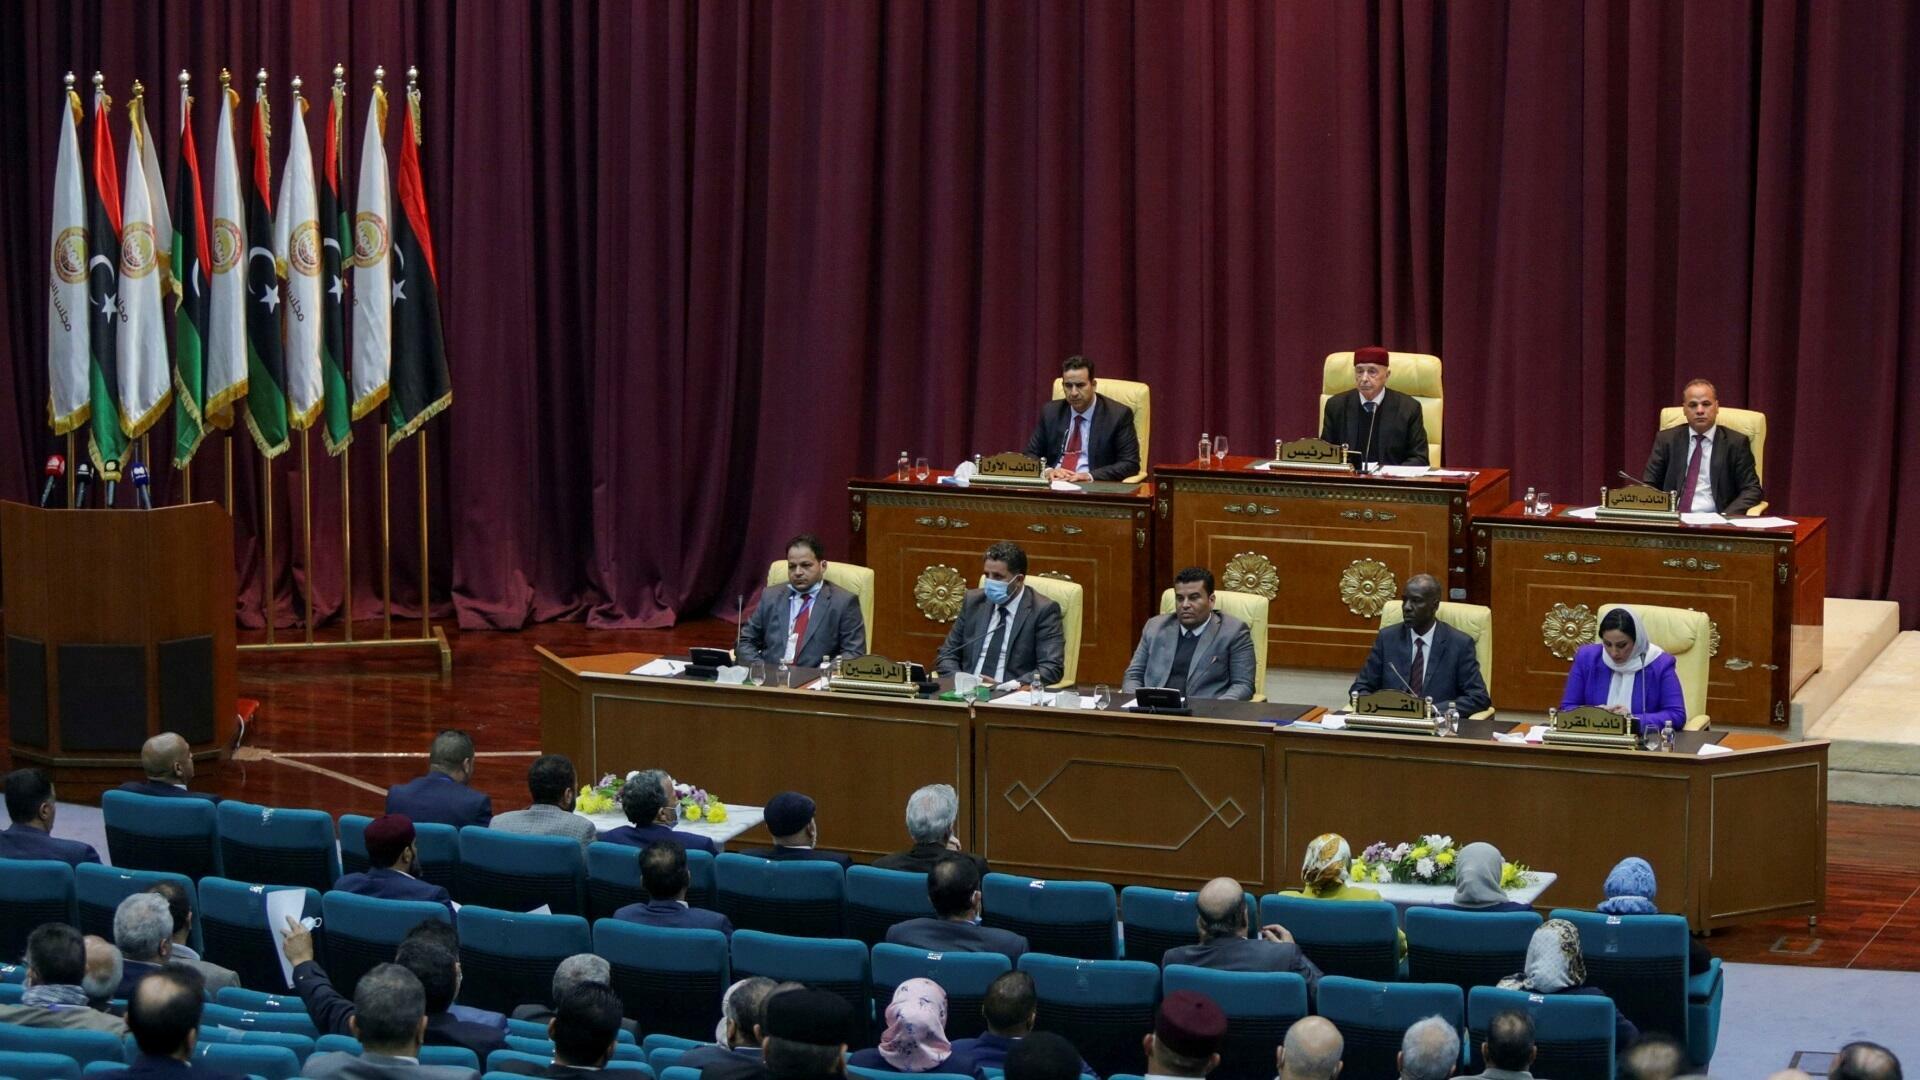 البرلمان الليبي يدعو لاستئناف المشاورات المتعلقة بالمسار الدستوري مع المجلس الأعلى للدولة (ا ف ب)